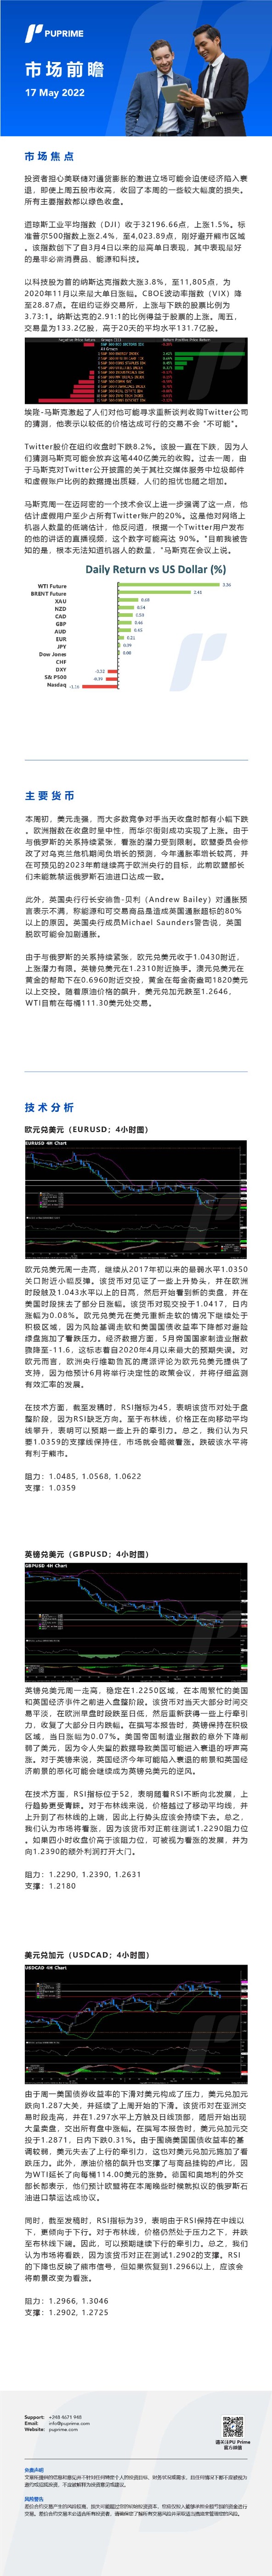 17052022 Daily Market Analysis__CHN.jpg